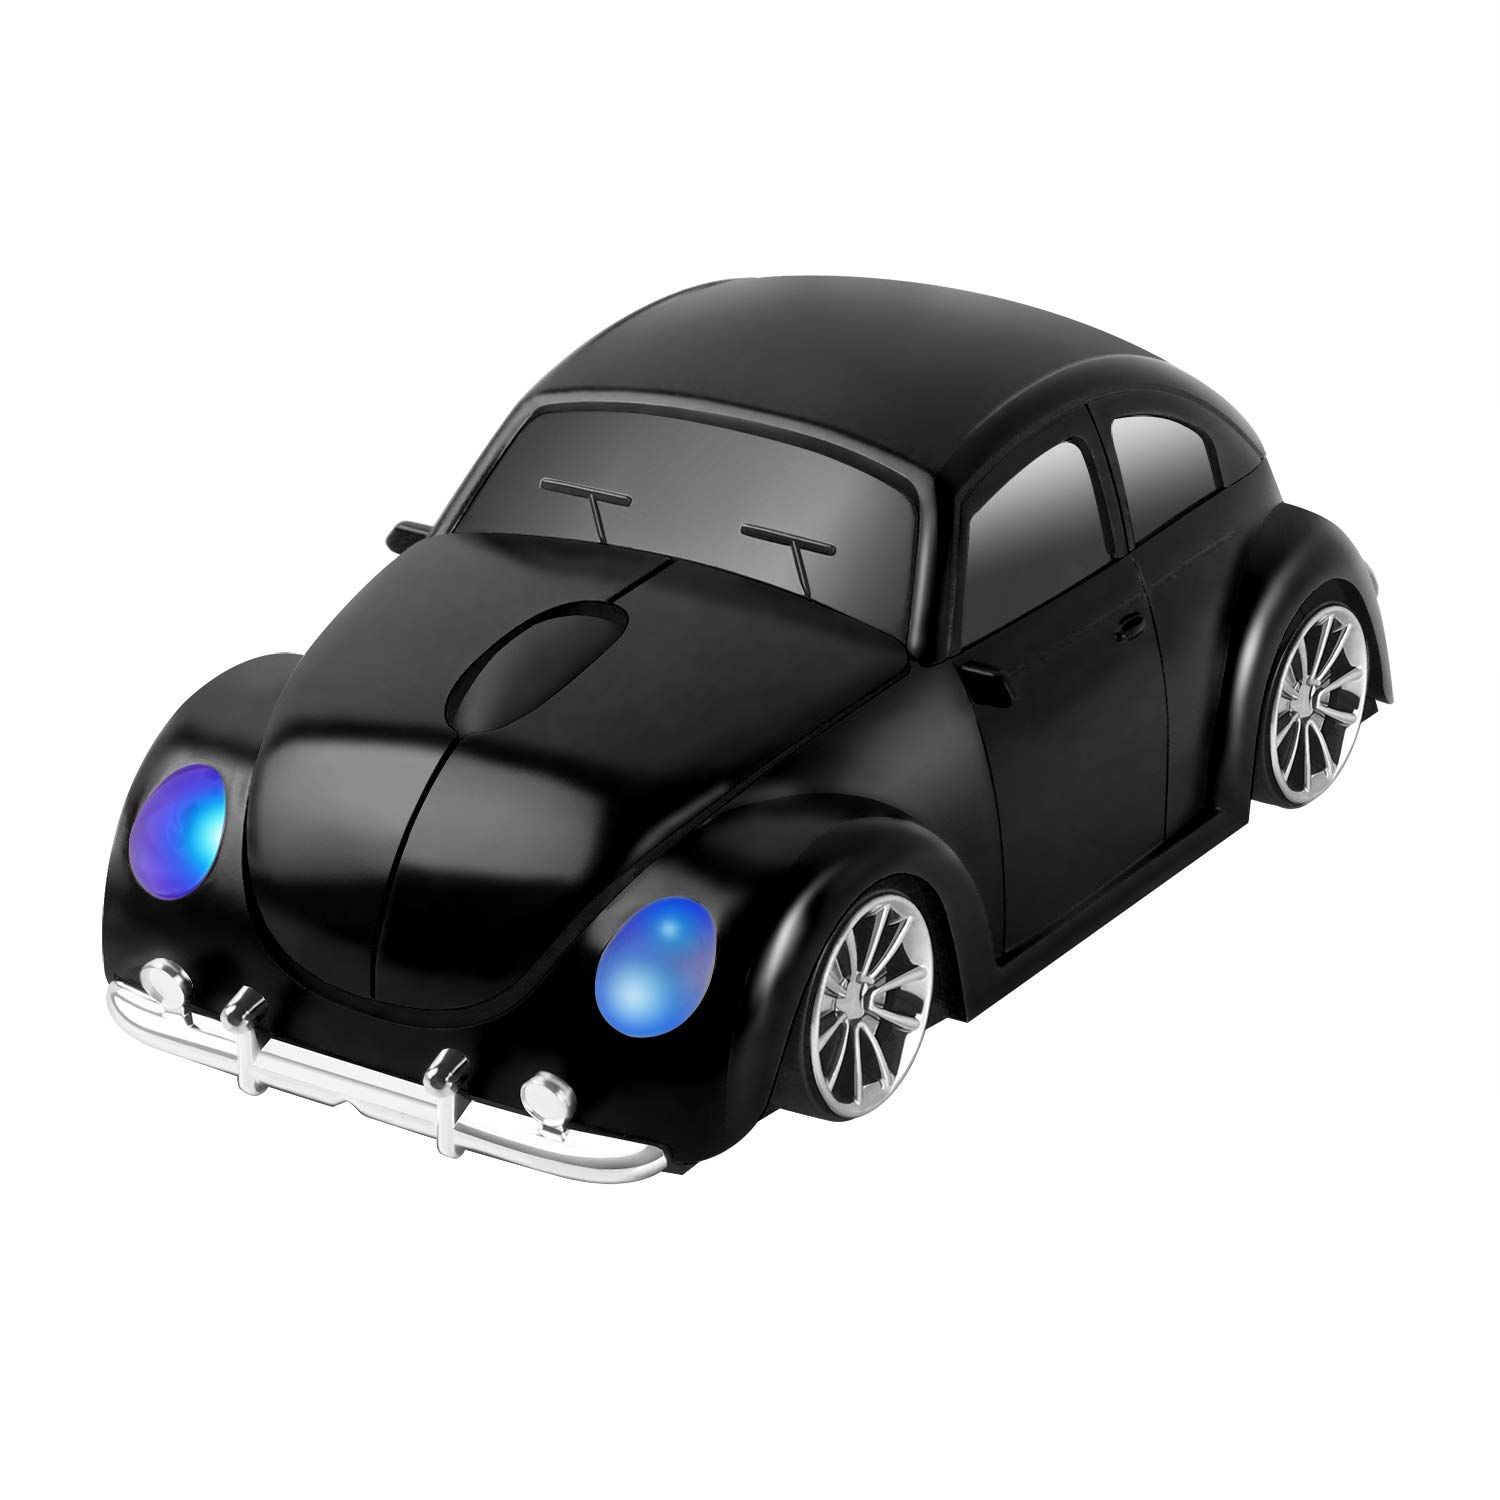 楽天Rumay2.4GHzワイヤレスマウス 車の形状 無線マウス USB光学式 電池式 Mサイズ 軽量 コードレス スポーツカー型マウス 青色LEDライト付き 子供用 PC/ノートパソコン/コンピューター/Macbookに対応 車型 人気 おしゃれ （黒）